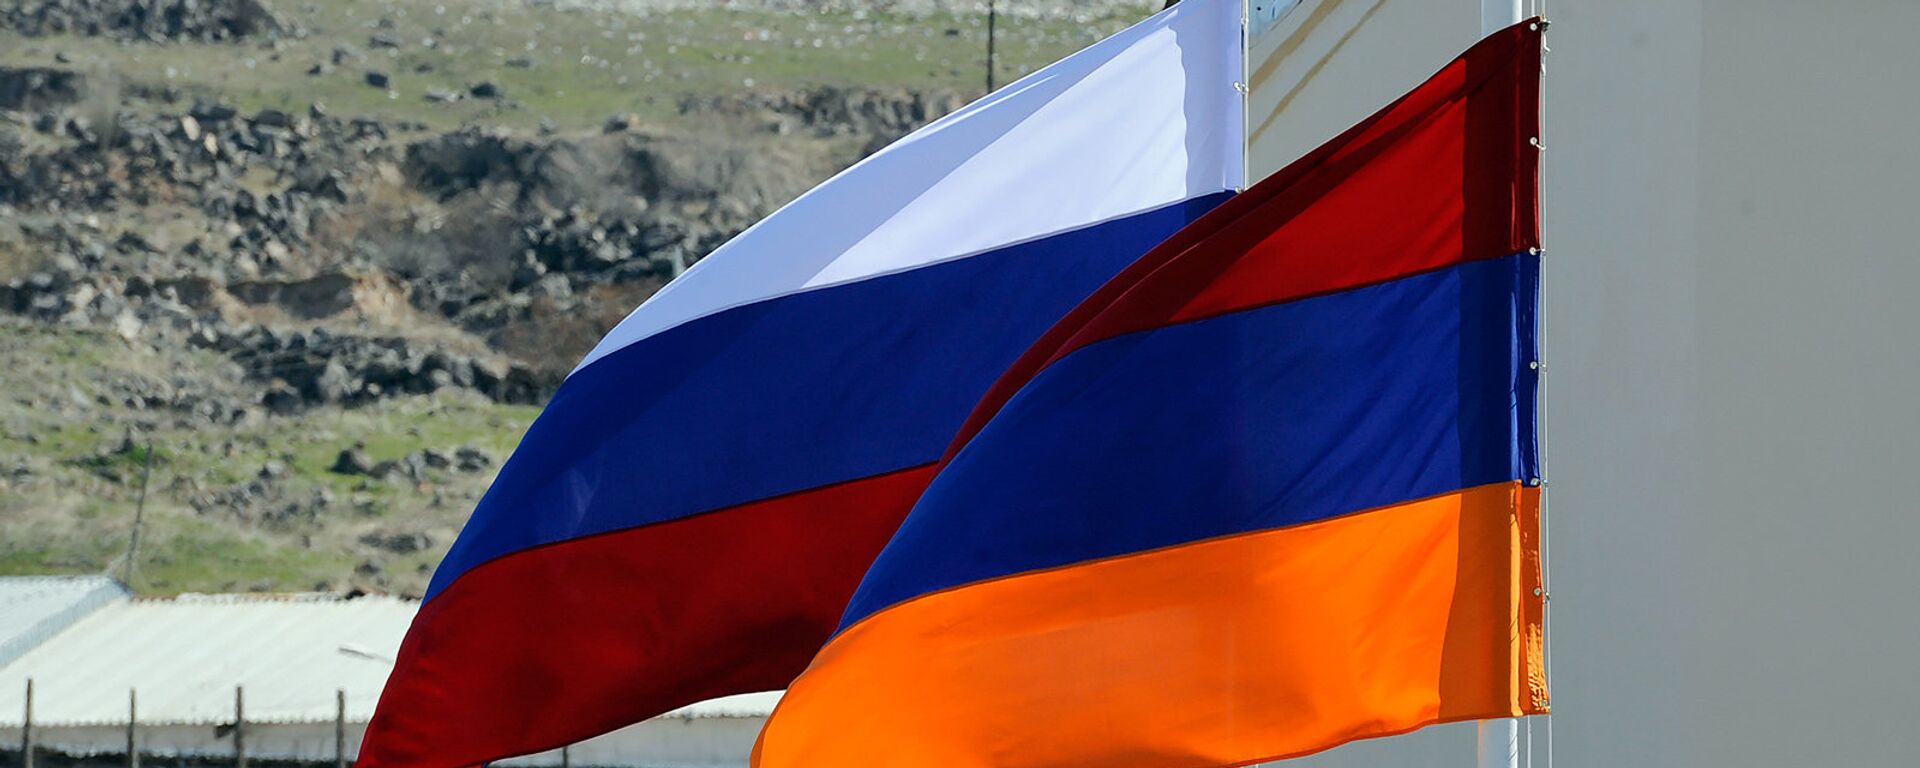 Banderas de Rusia y Armenia - Sputnik Mundo, 1920, 25.11.2021